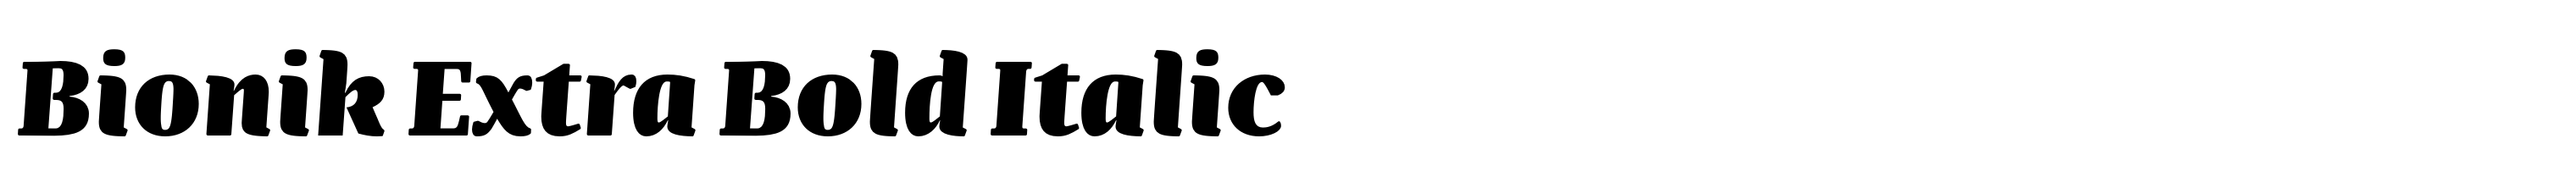 Bionik Extra Bold Italic